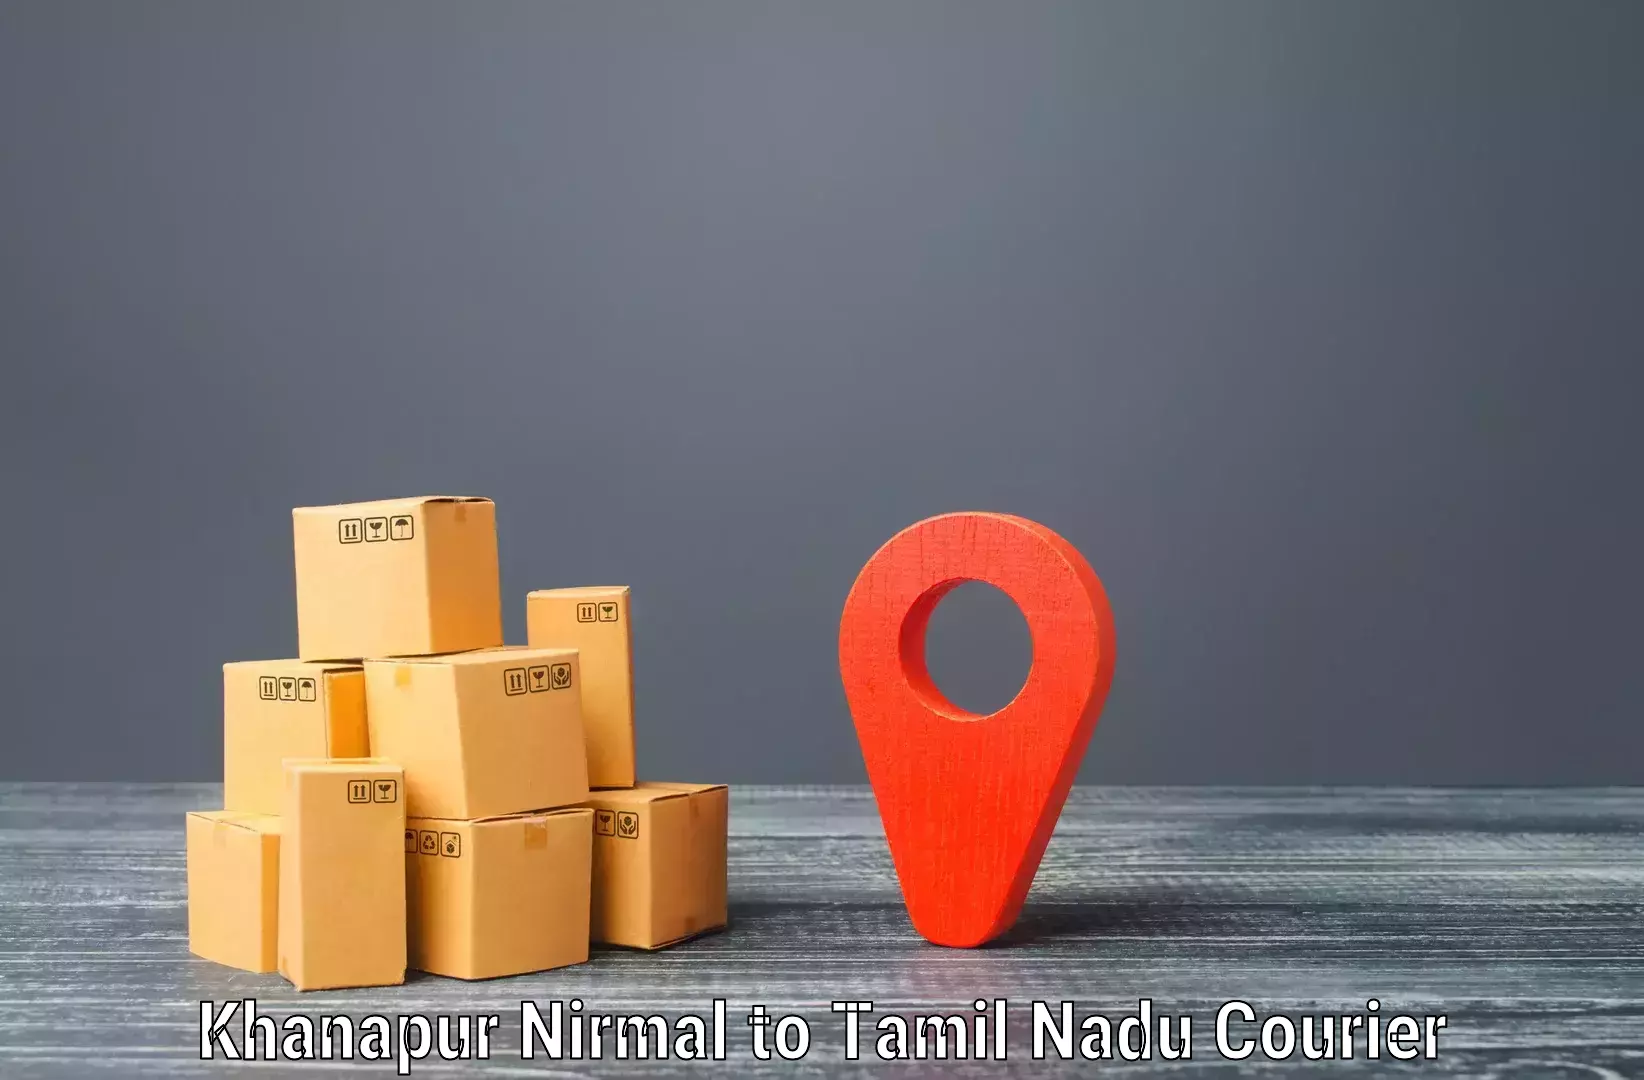 Efficient parcel transport Khanapur Nirmal to Valparai